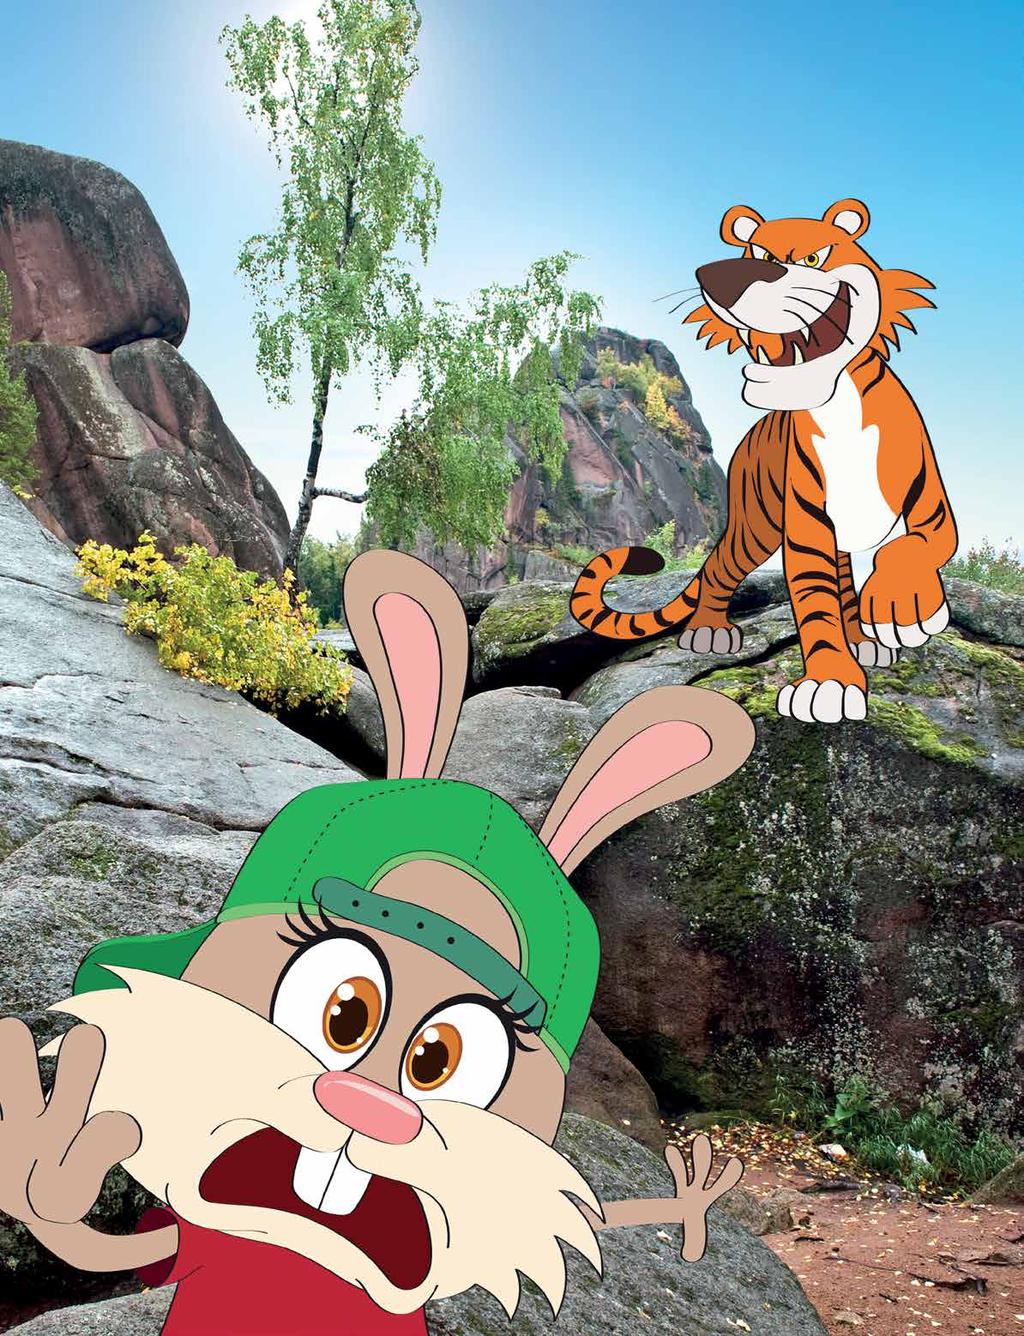 Er det mon dig, tiger, der har taget min madkasse?